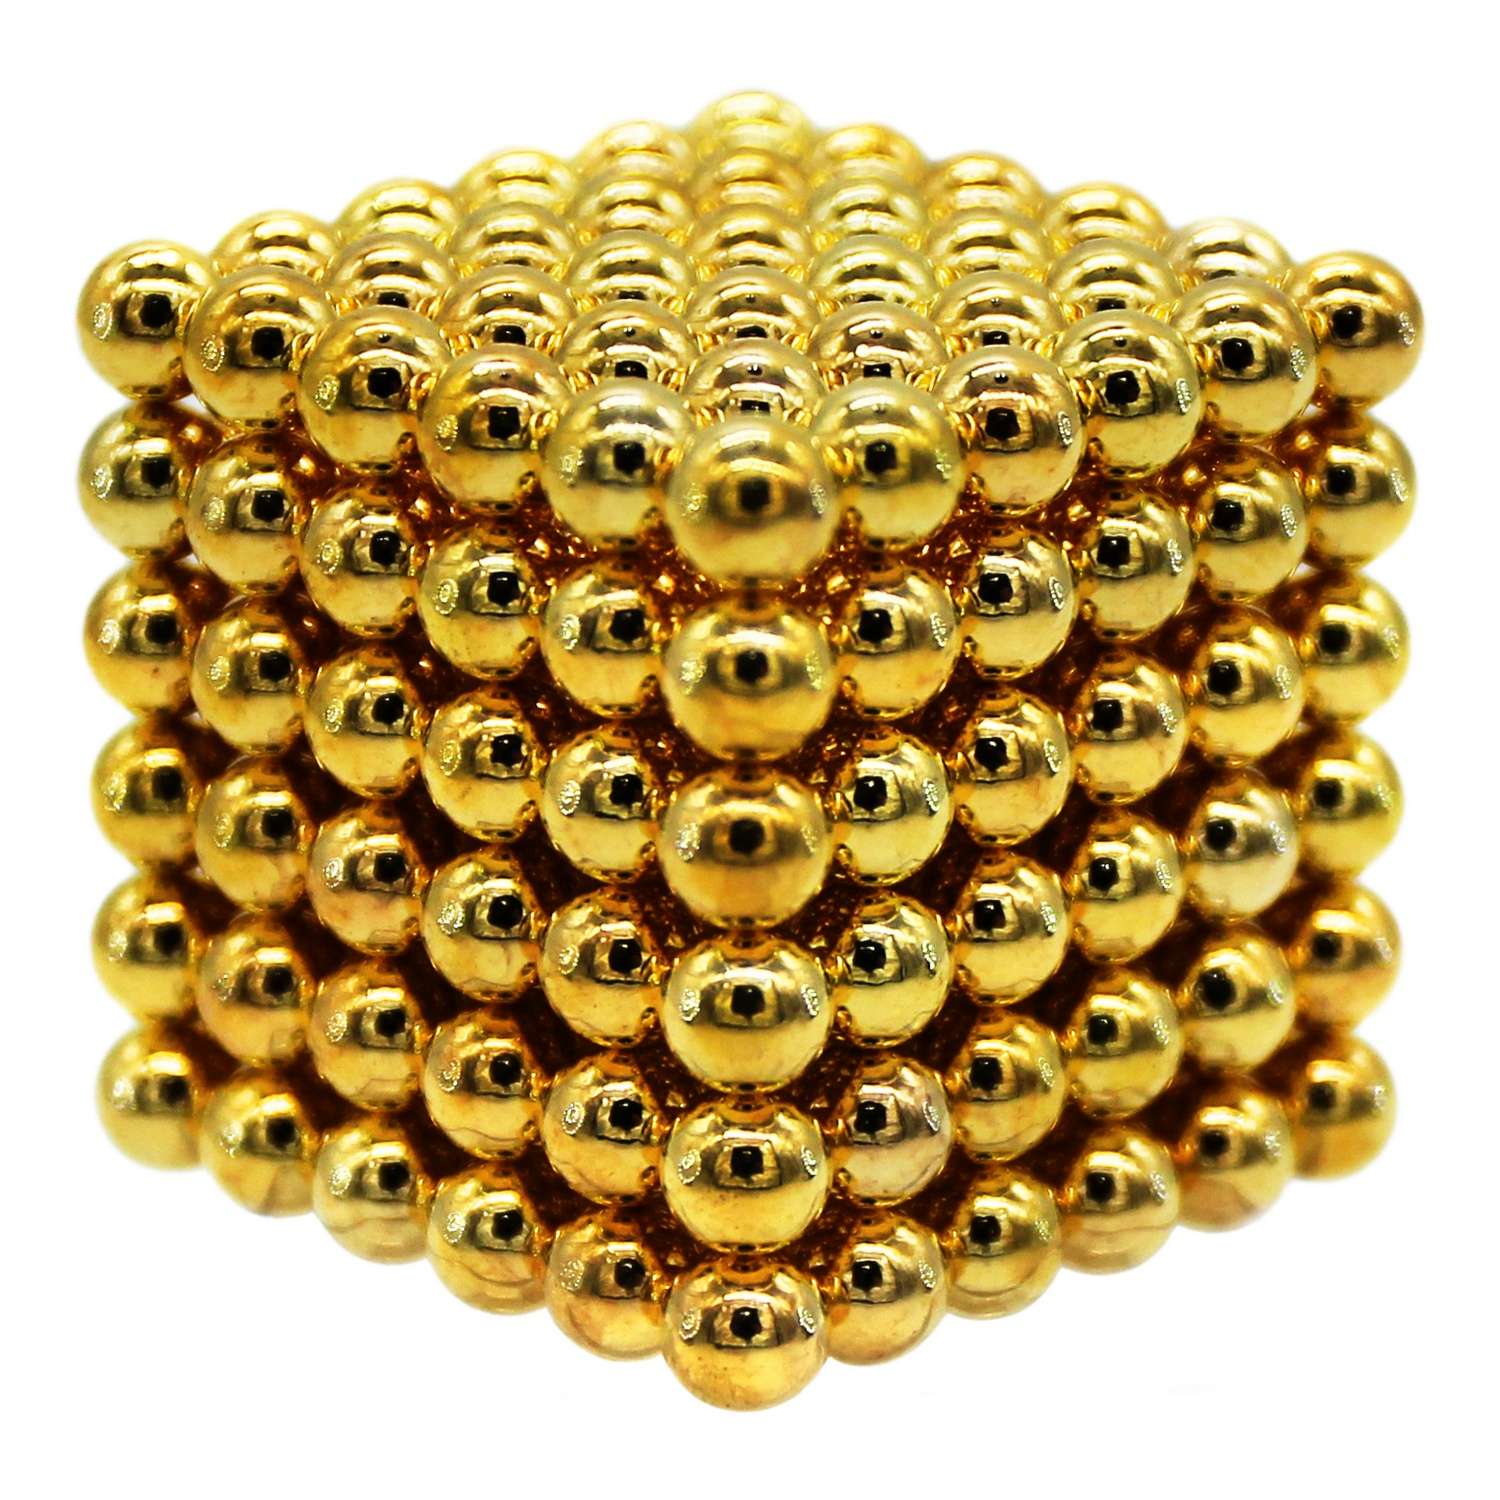 Головоломка магнитная Magnetic Cube золотой неокуб 216 элементов - фото 6